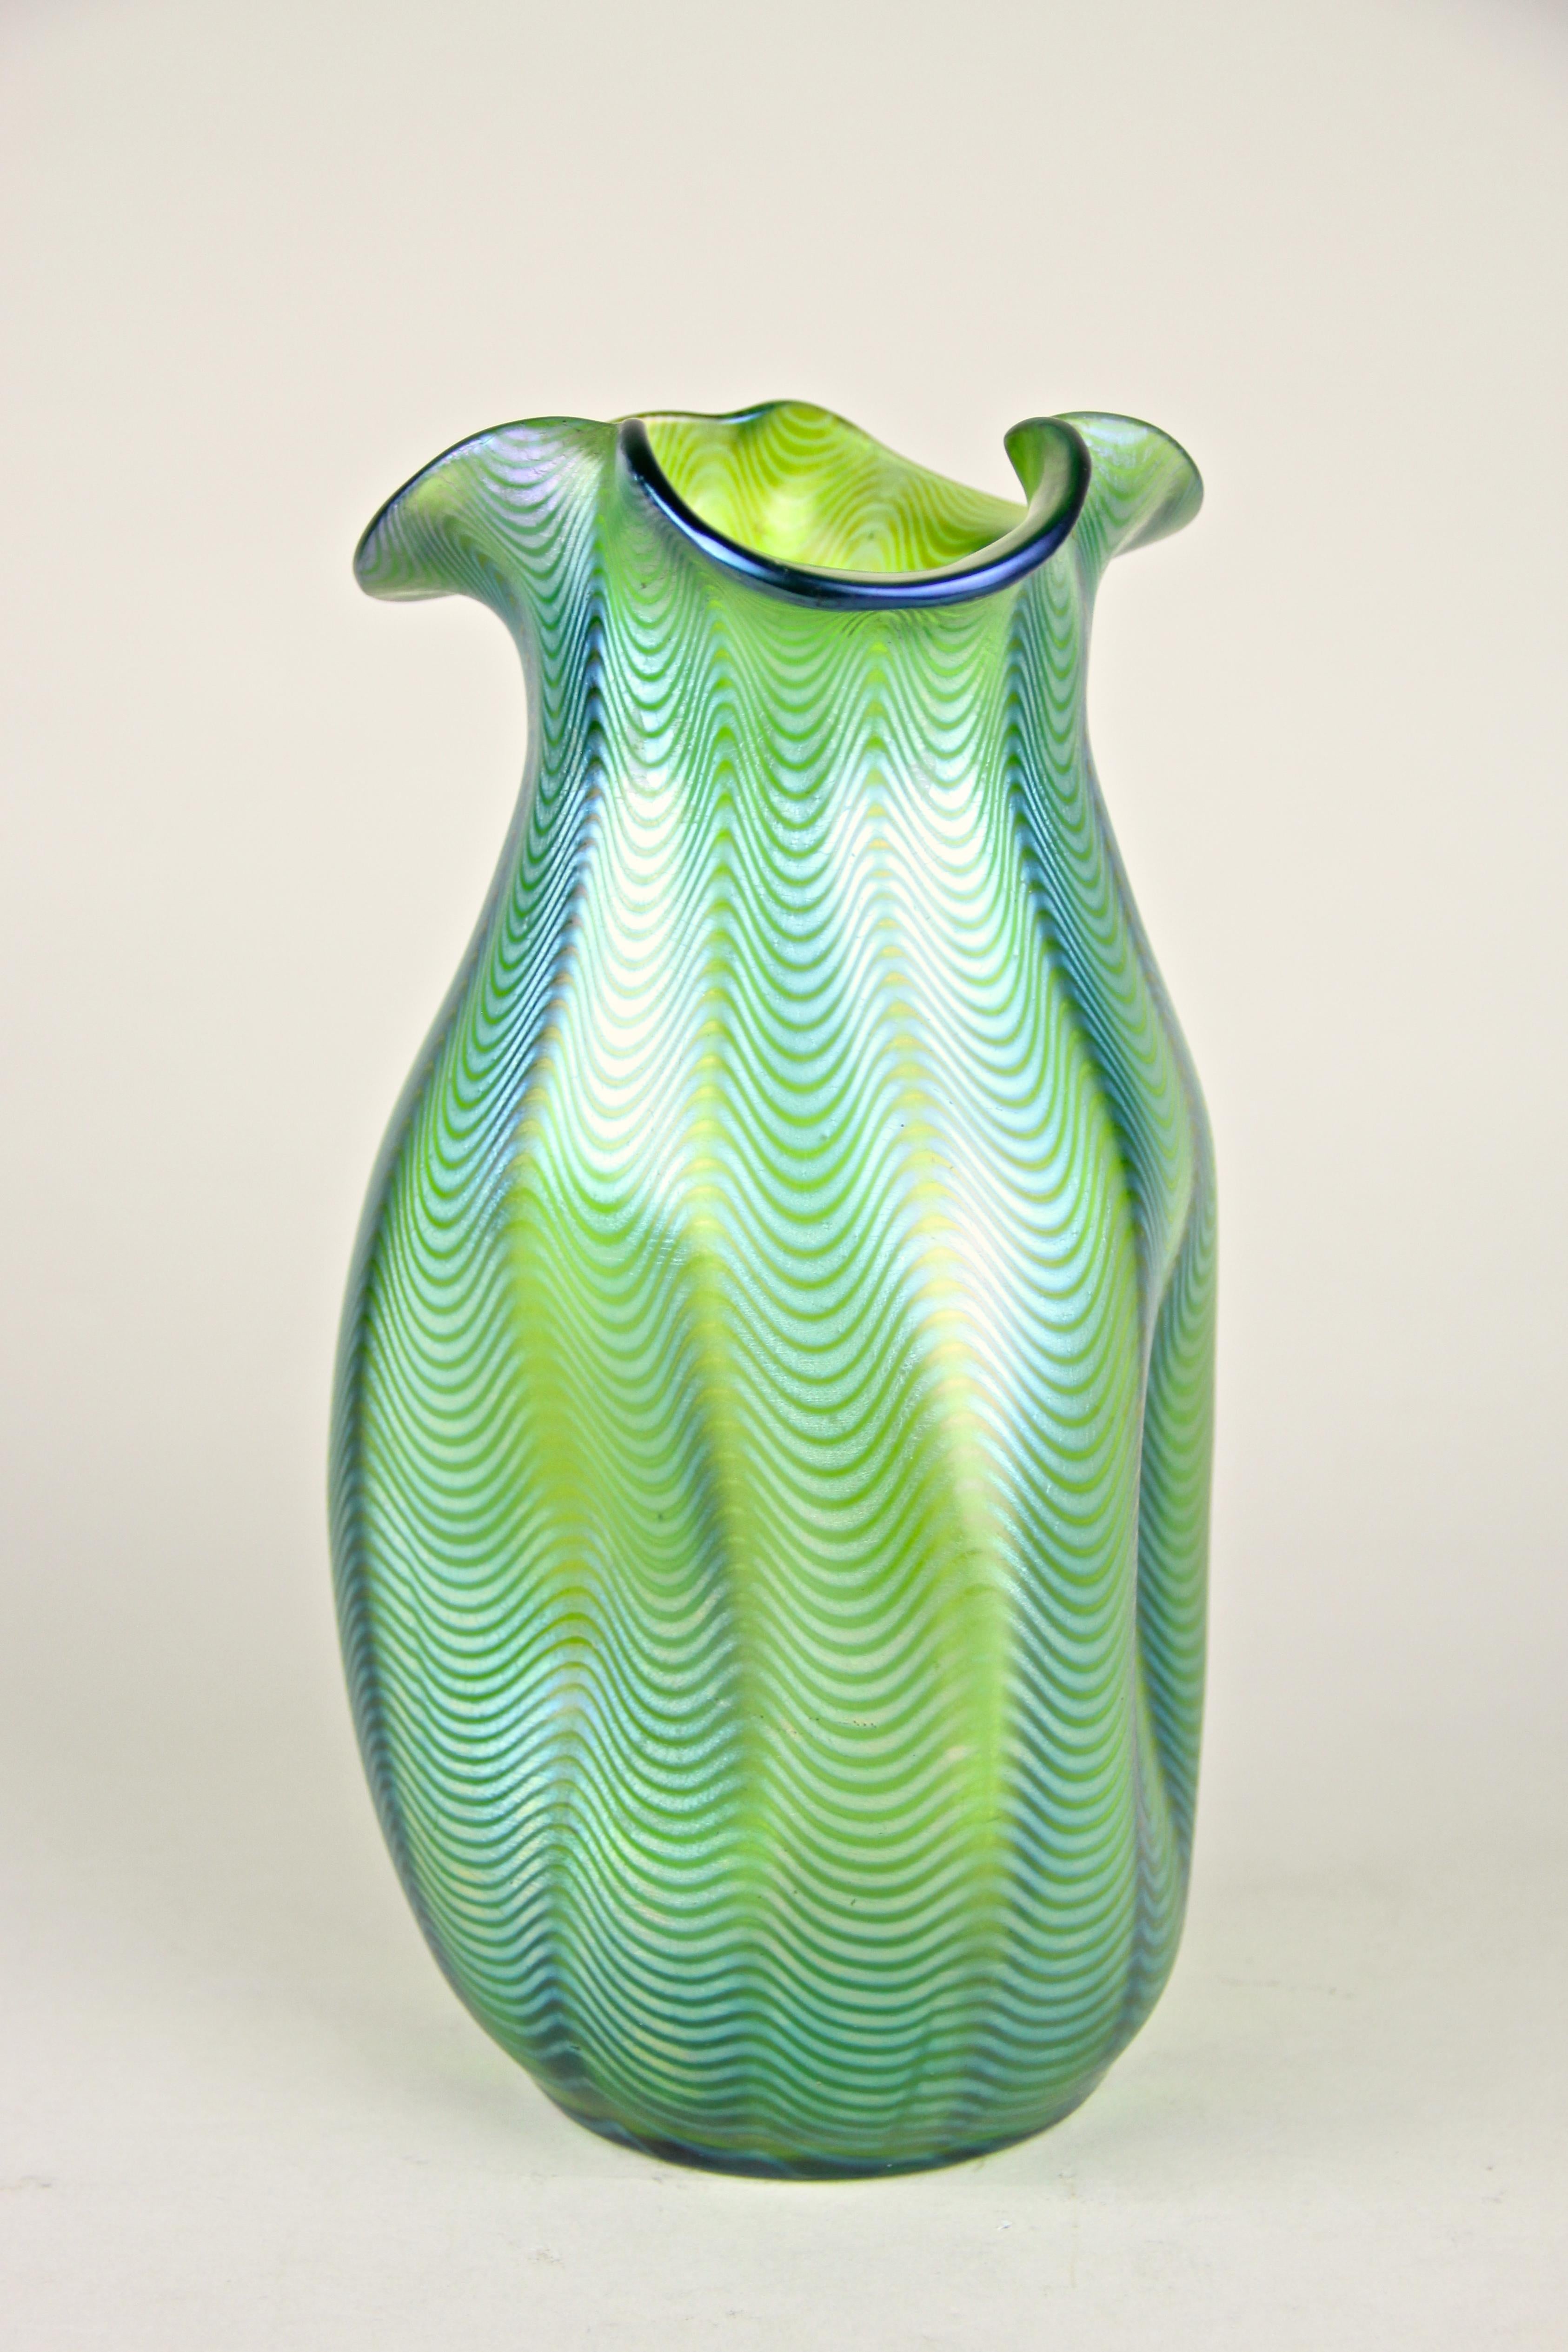 Fantastique vase en verre Loetz Witwe avec le décor Crete Phaenomen 6893 fabriqué dans les célèbres ateliers de Klostermuehle/ Bohemia, vers 1898. Cette rare exécution PN I-7529 montre une belle base en verre vert enroulée de jaune d'argent,